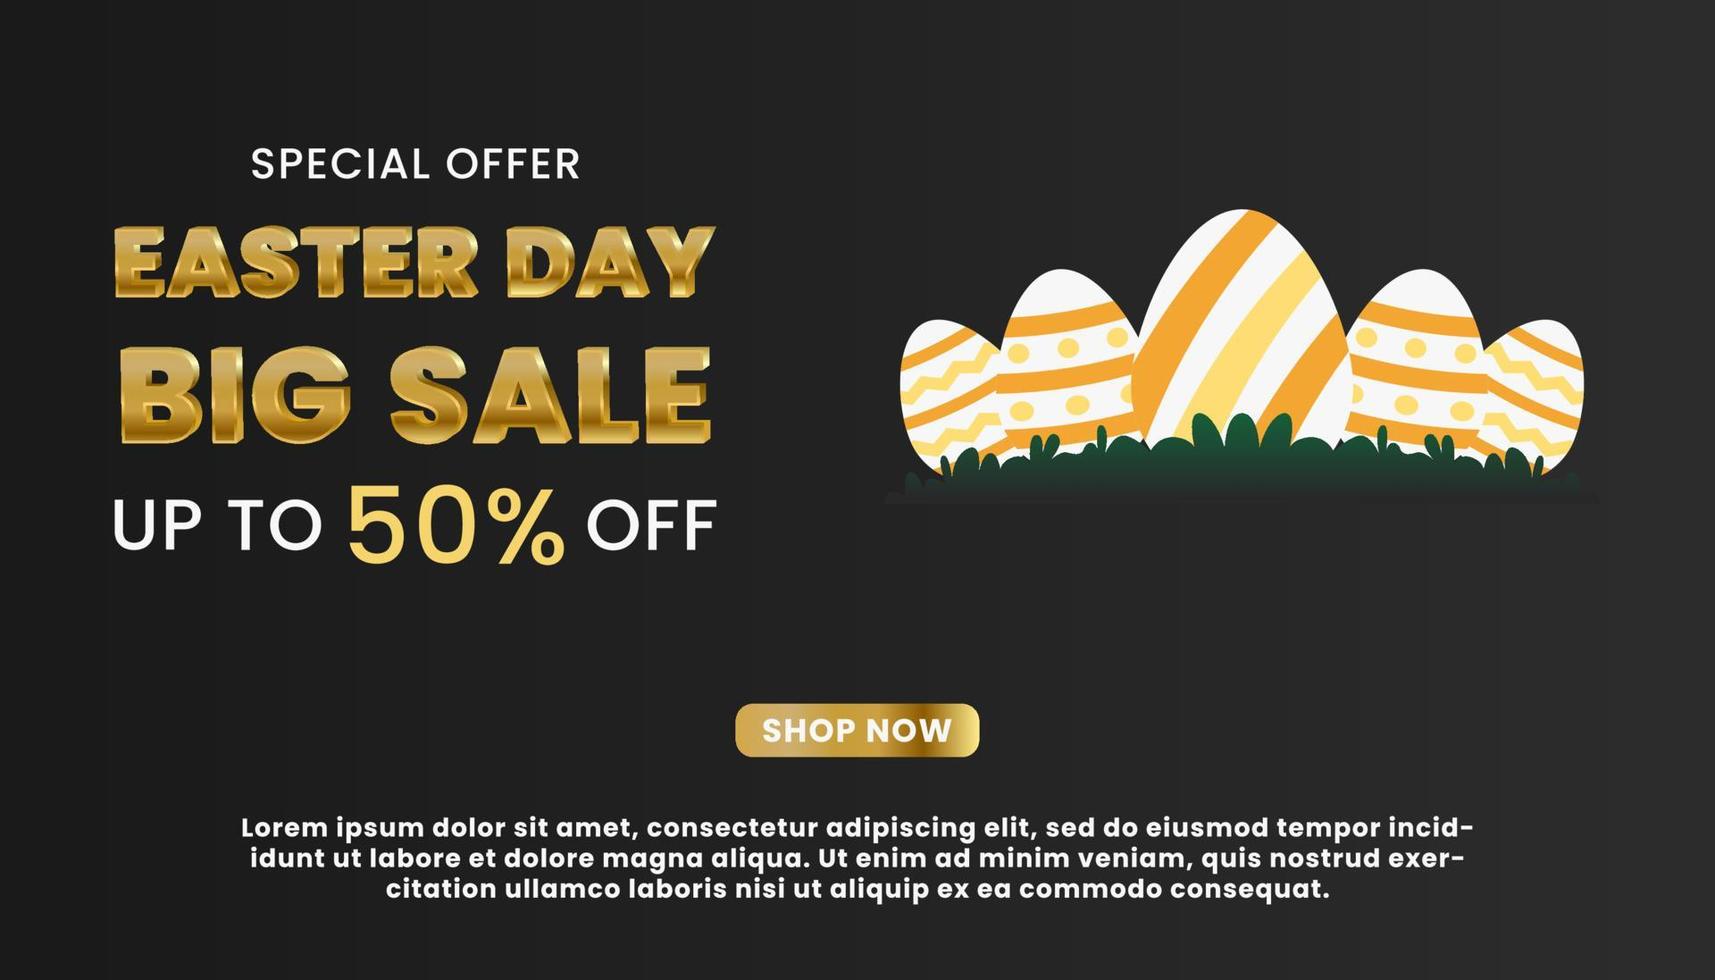 Elegant sale banner promotion for Easter Day vector